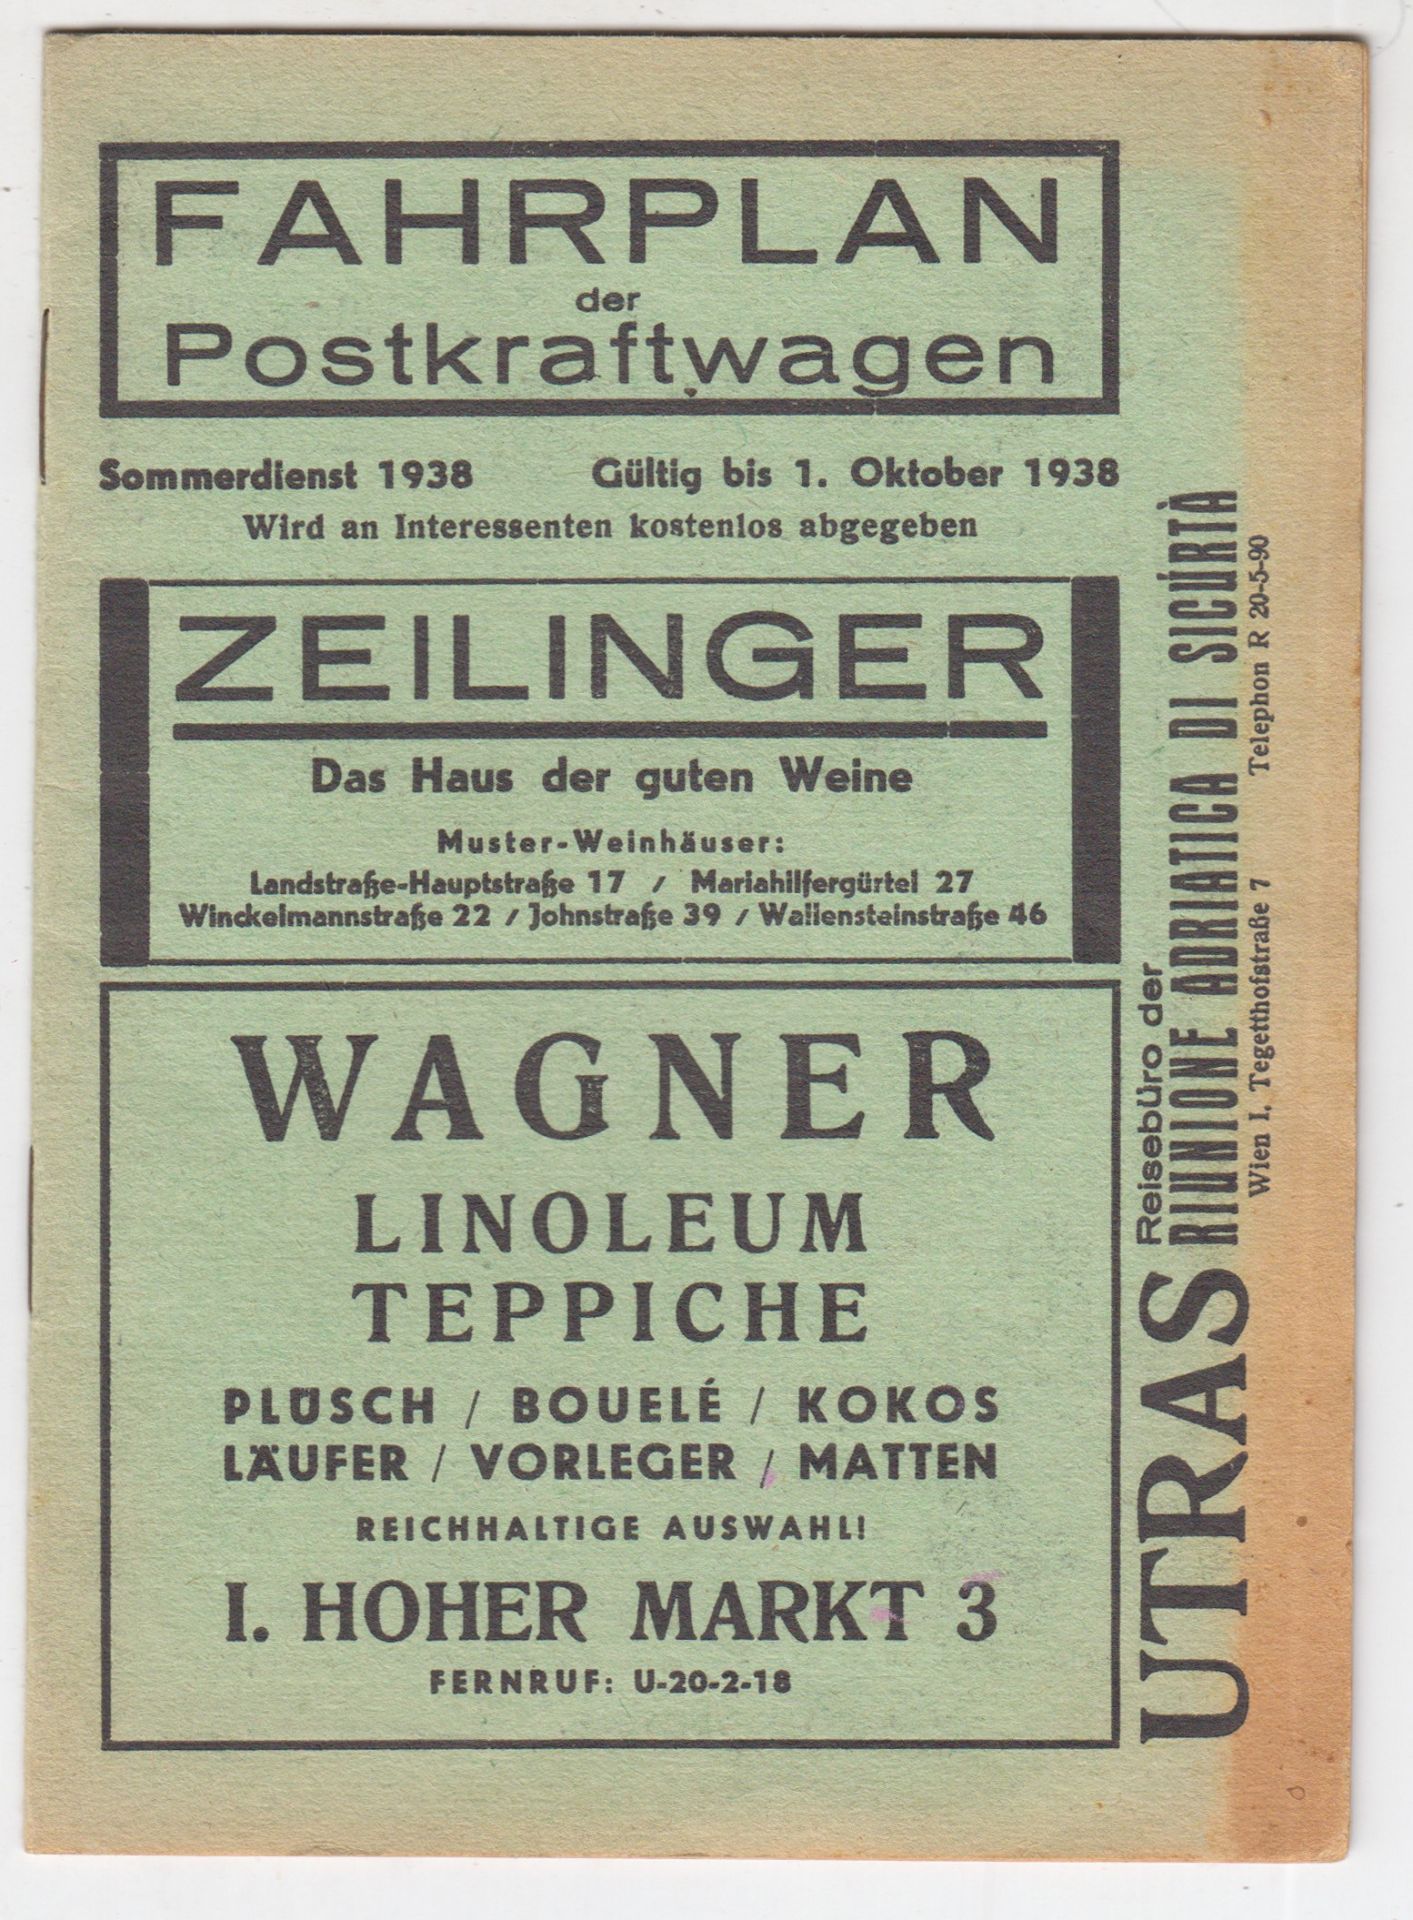  Fahrplan de Postkraftwagen. Sommerdienst 1938. Gltig bis 1. Oktober 1938.